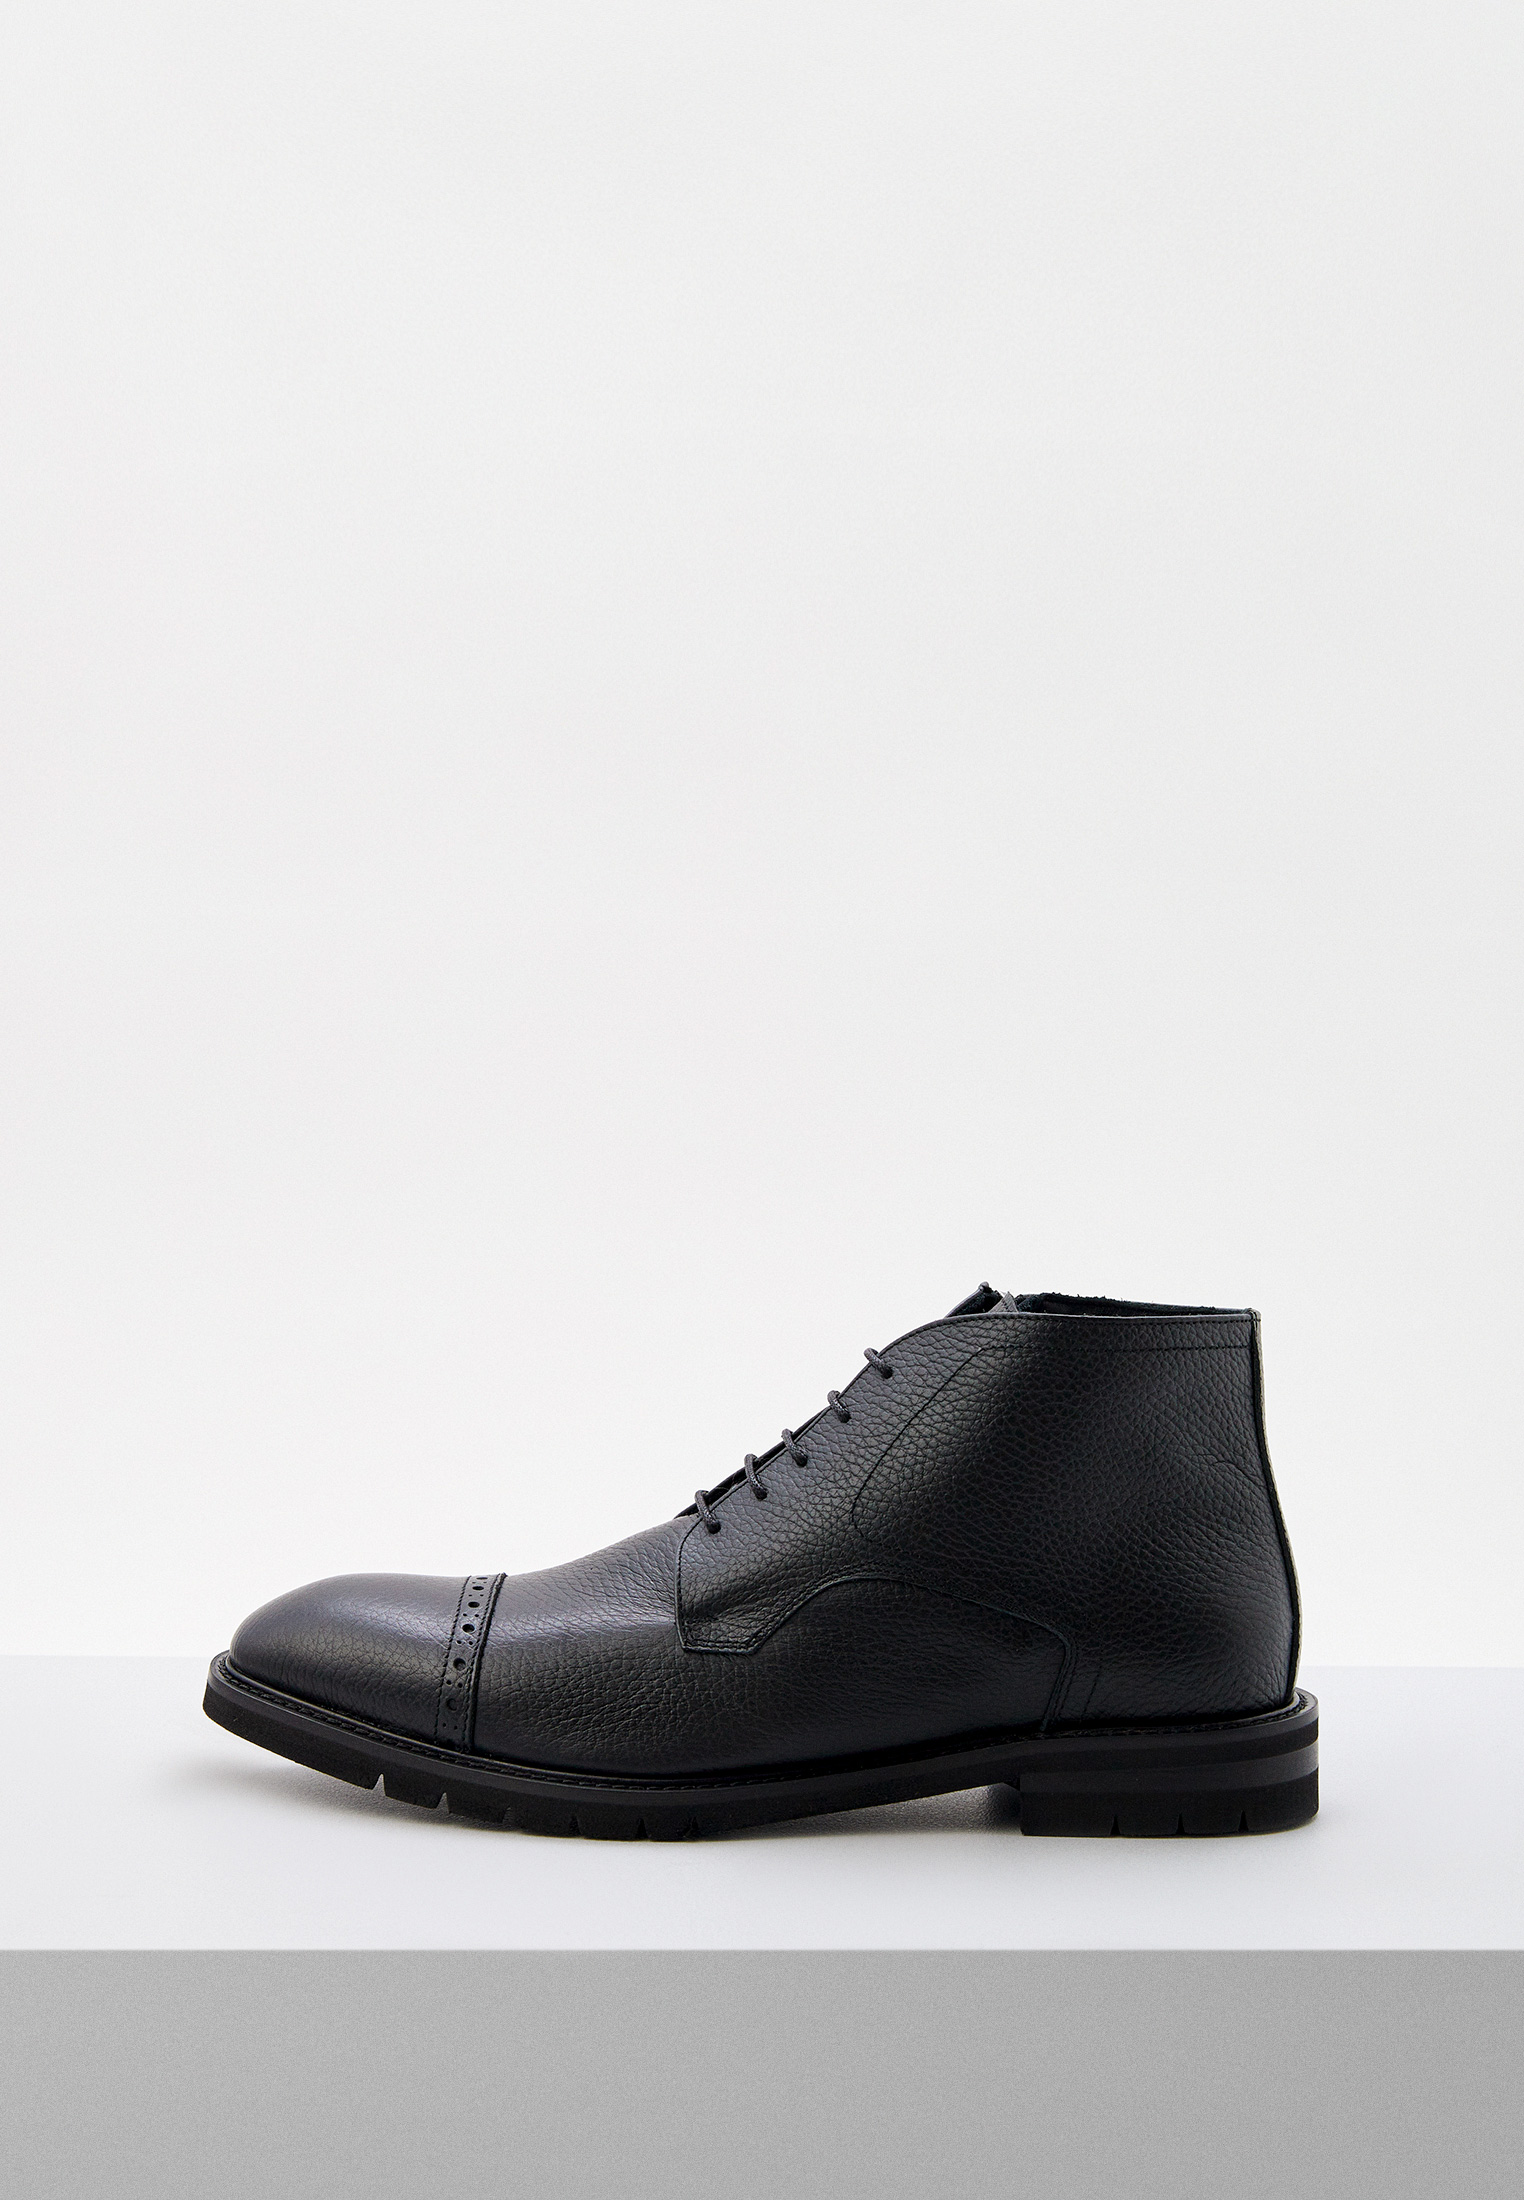 Мужские ботинки Baldinini (Балдинини) U3C741BOTT: изображение 1